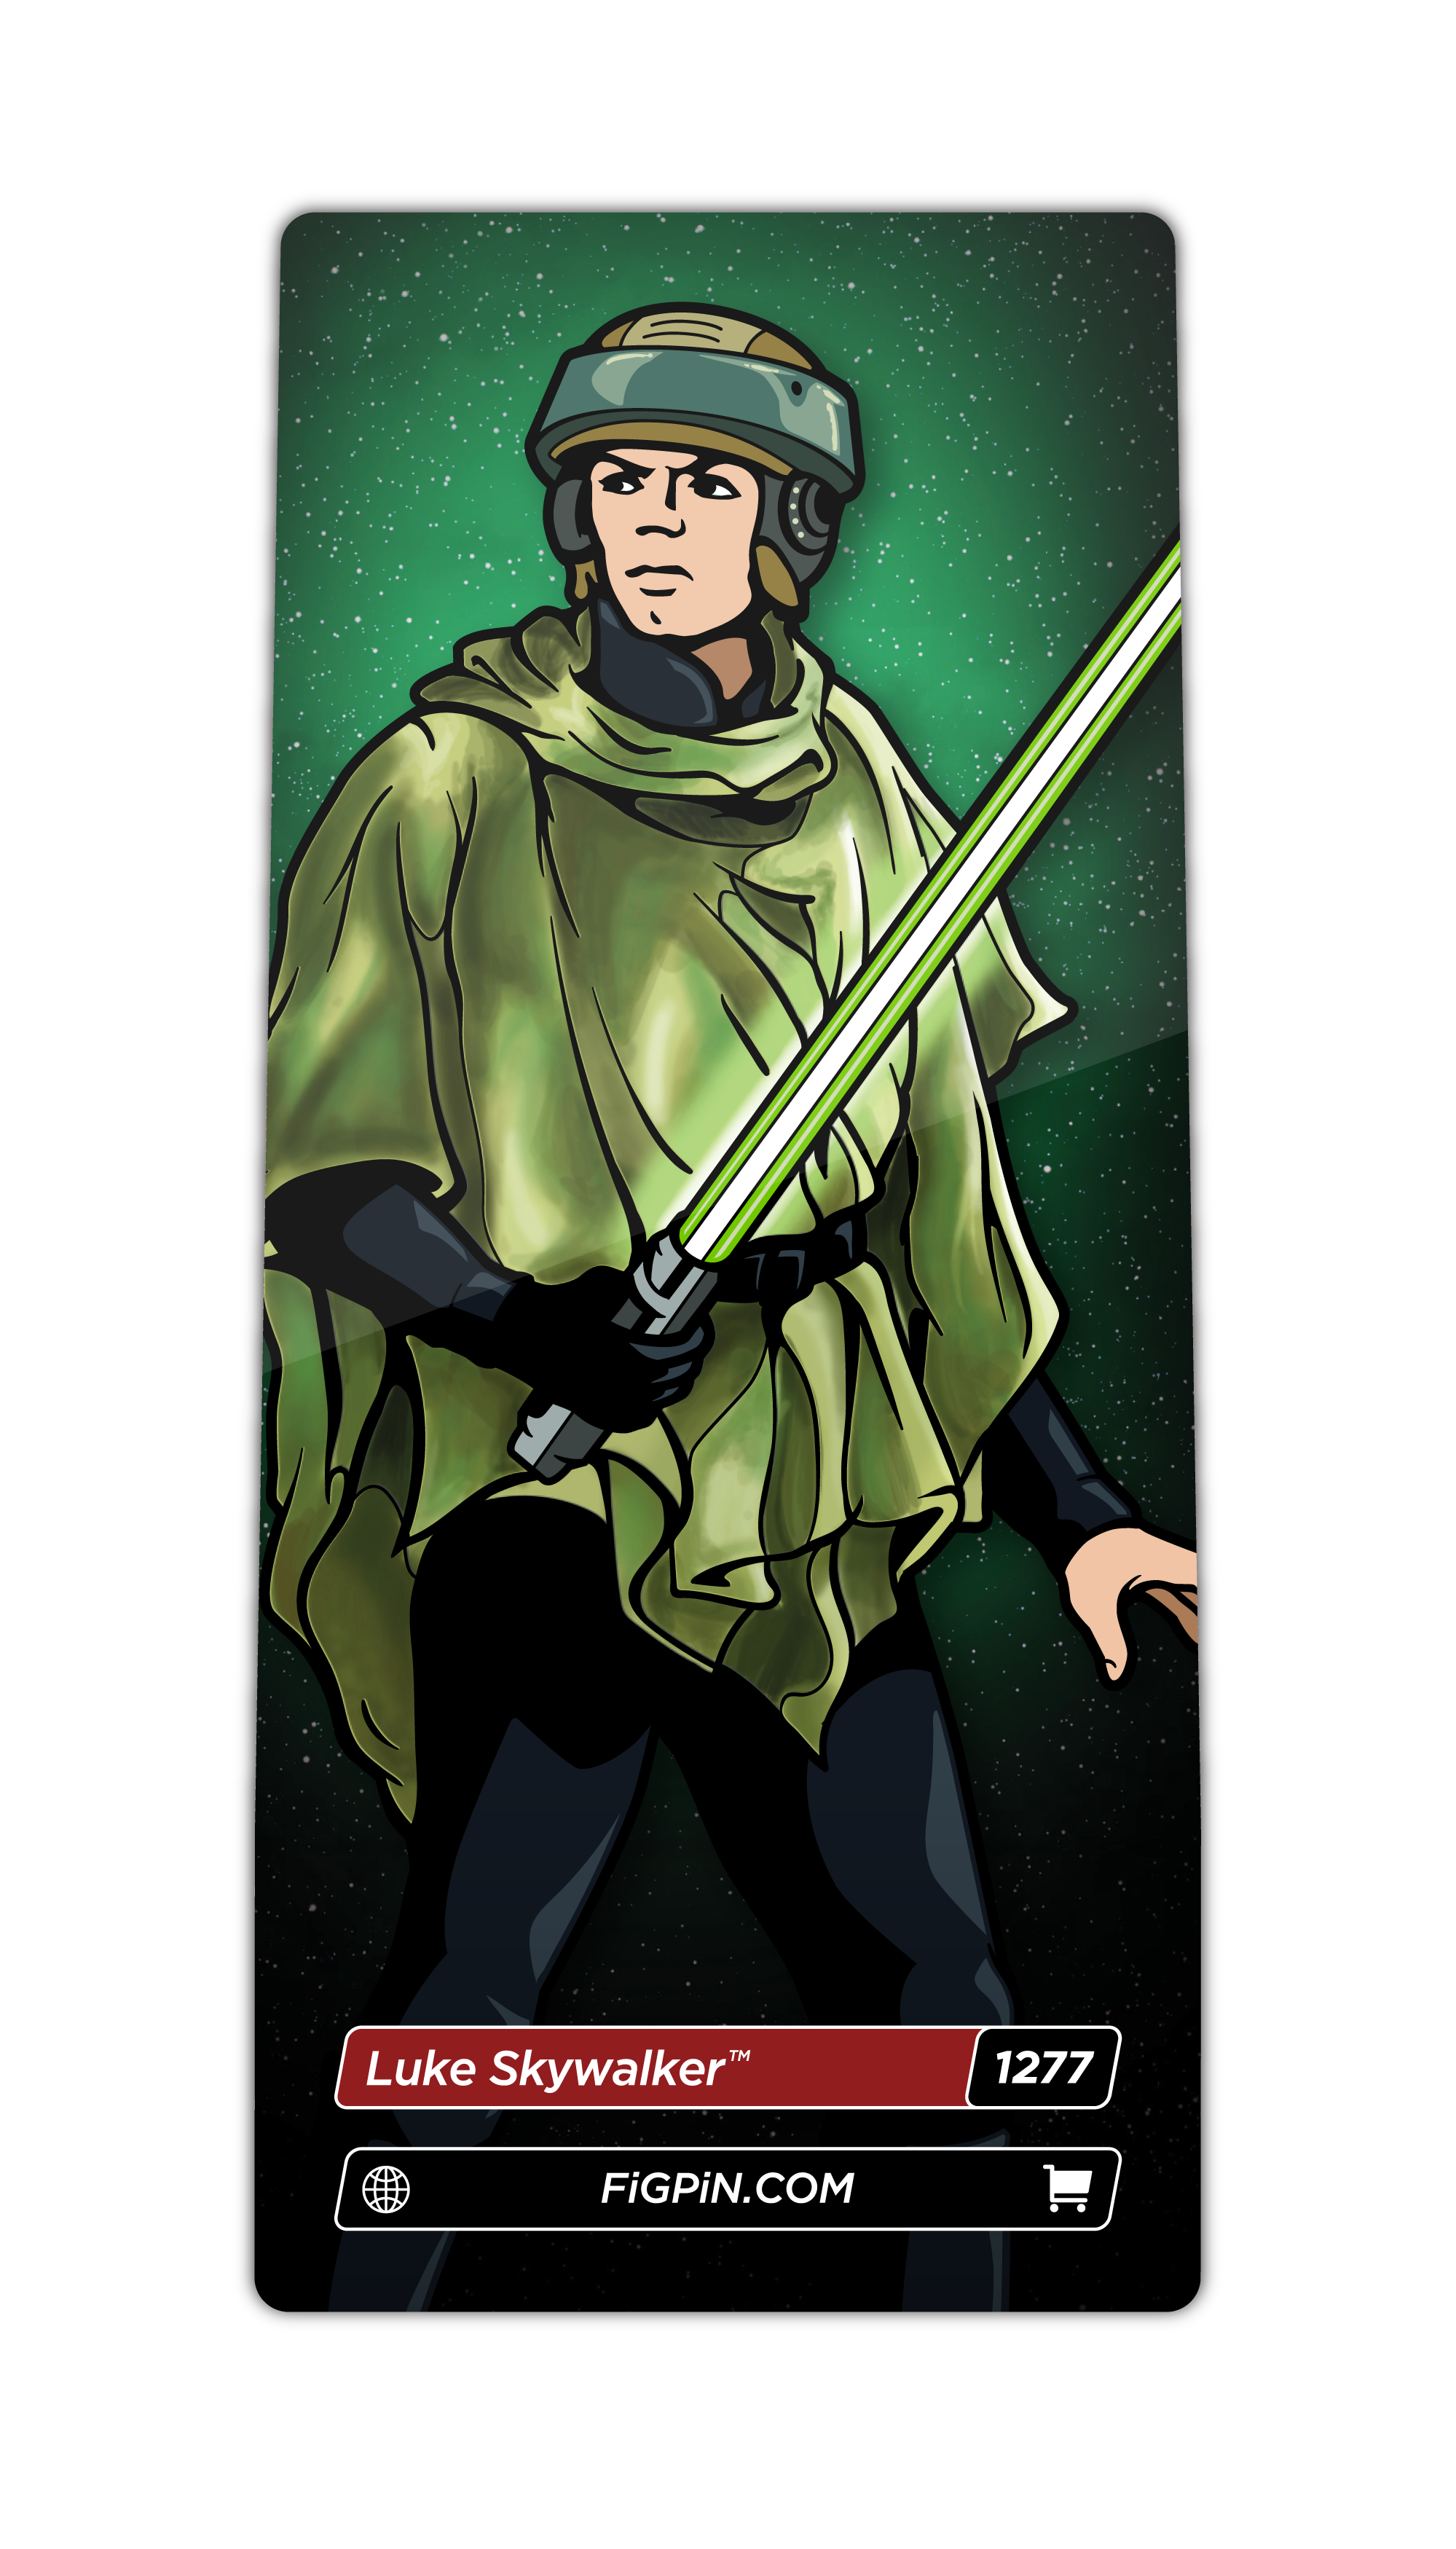 Luke Skywalker (1277)